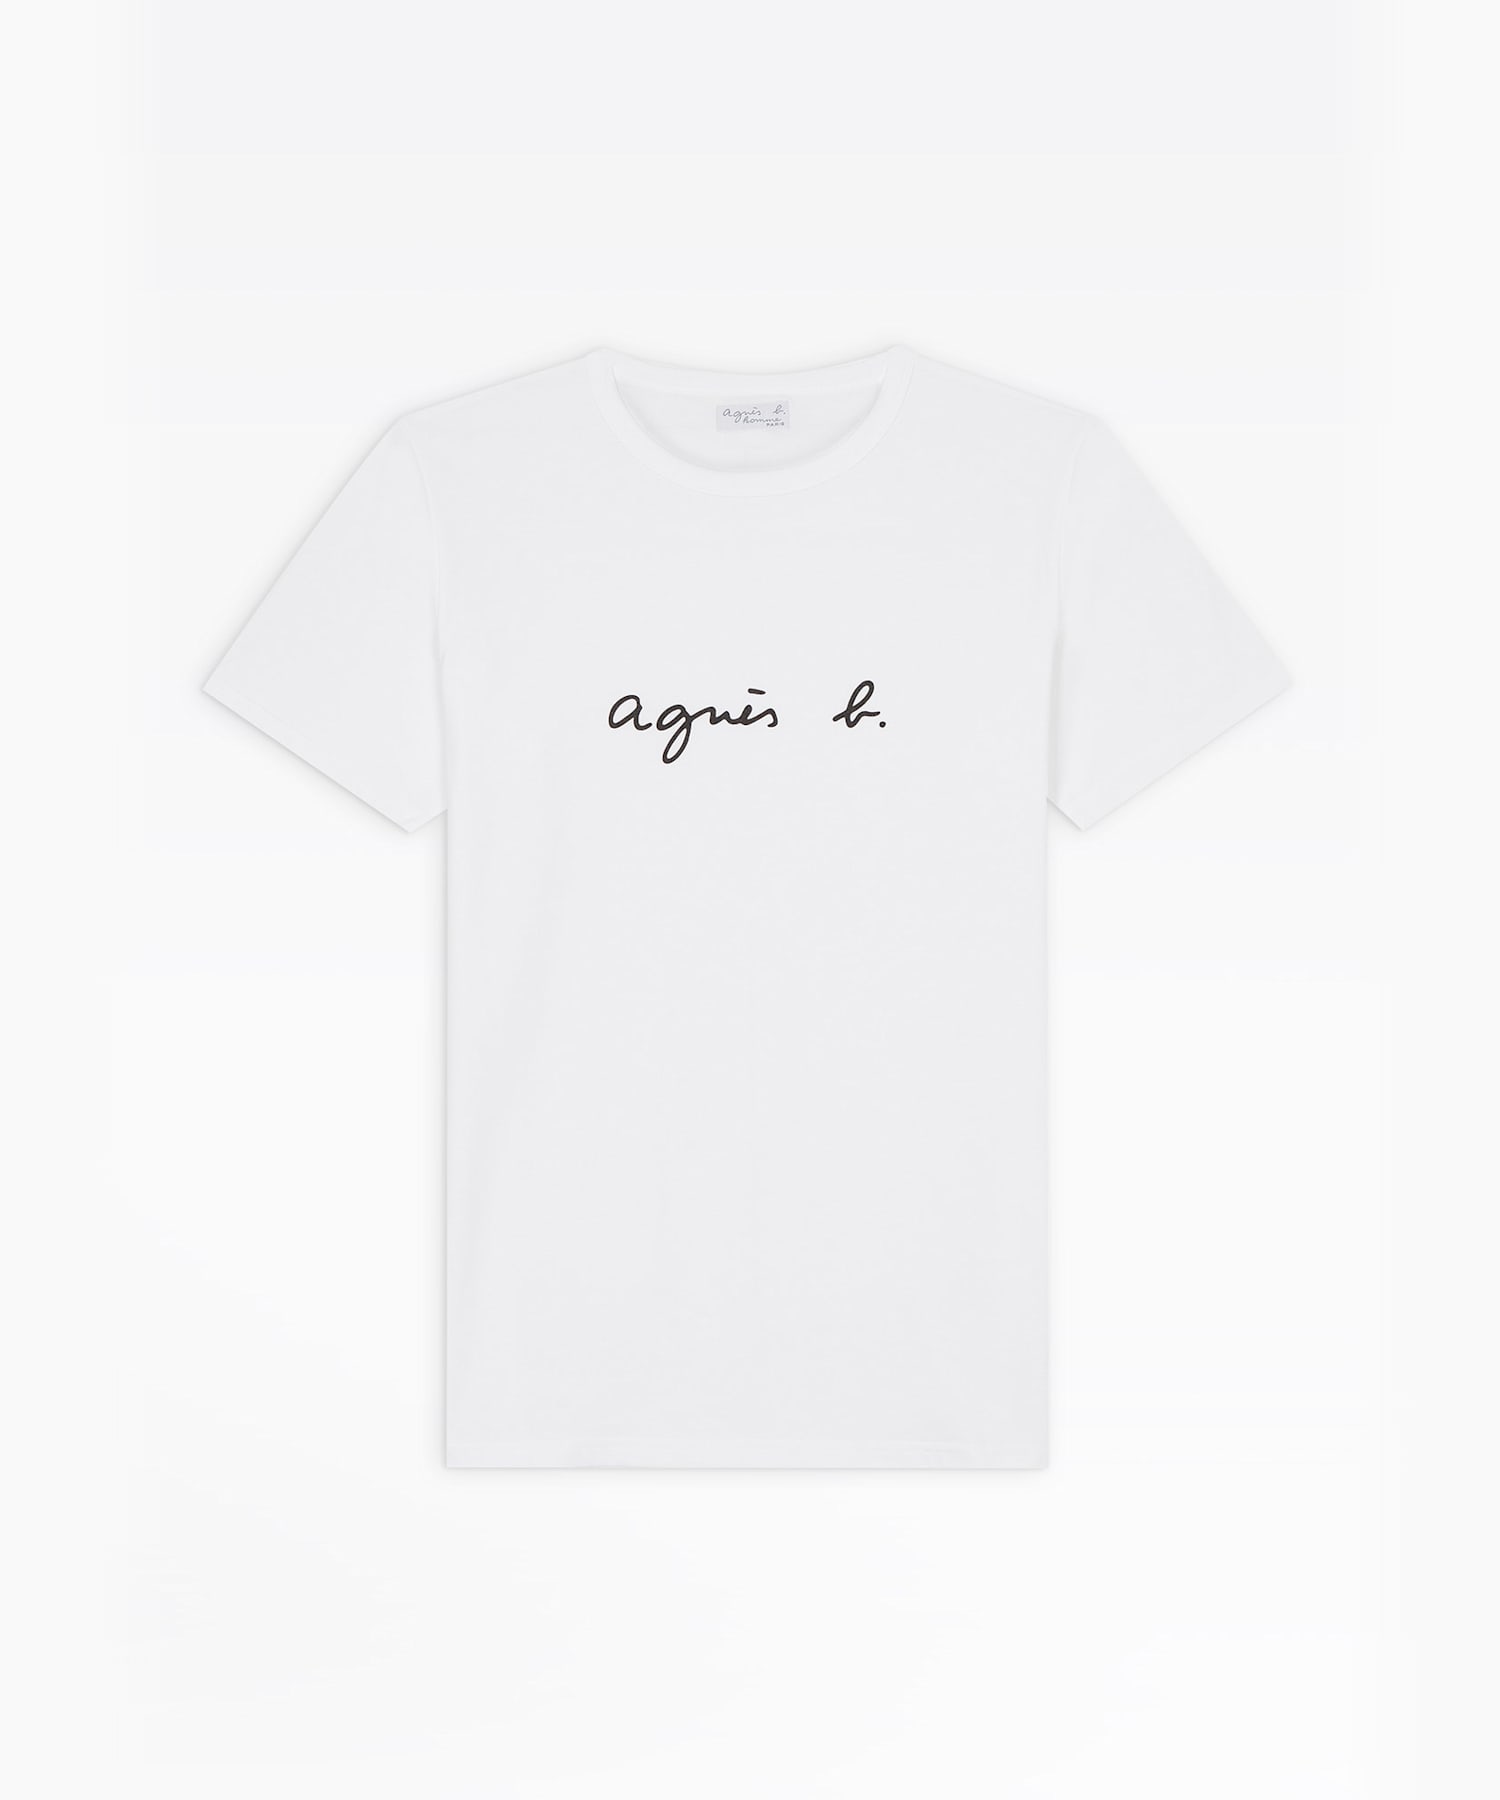 海外花系 agnes b. アニエスべー agnes b Tシャツ TS Tシャツ ホワイト Sサイズ 通販 